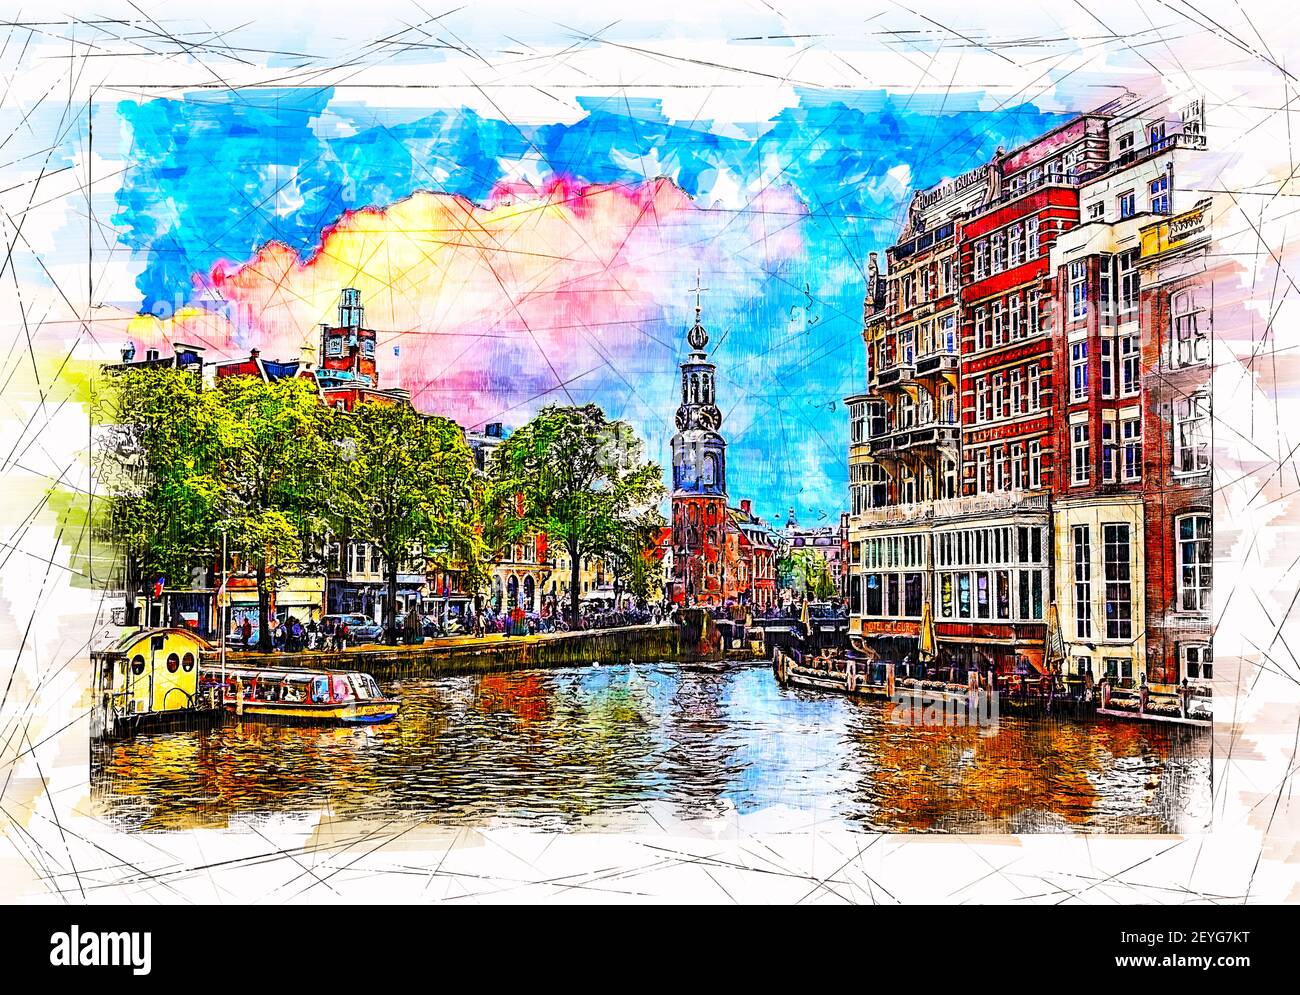 Vue sur le remblai de la rivière Amstel et la tour Munttoren. Amsterdam. Pays-Bas. Illustration de l'esquisse. Banque D'Images